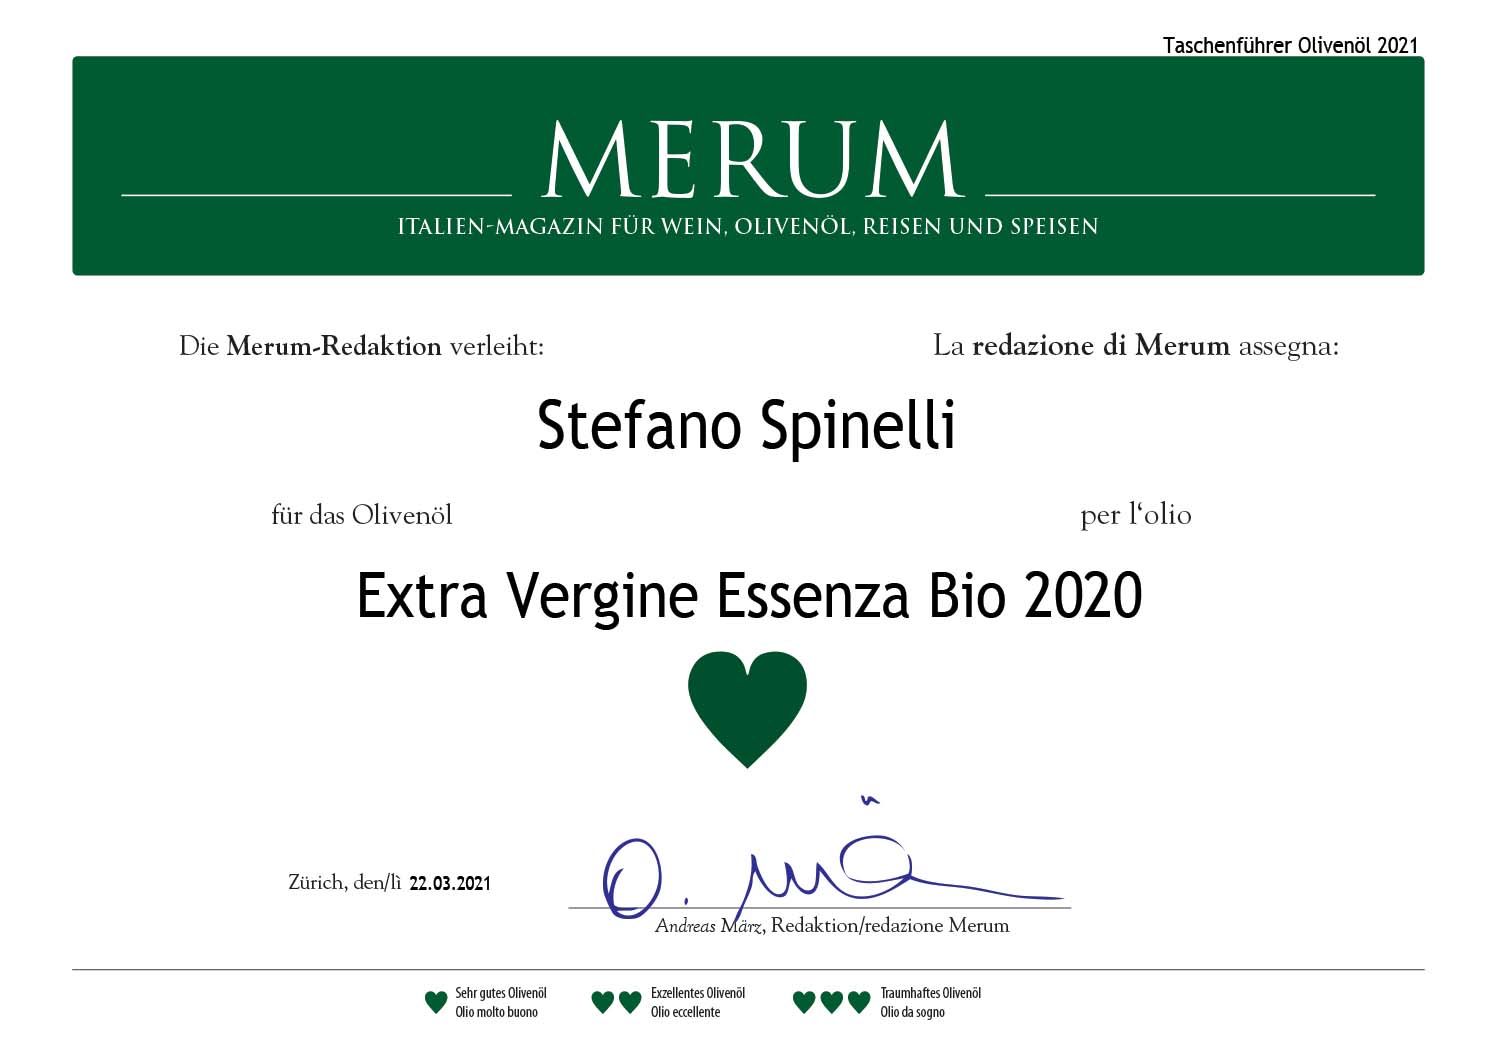 Olio Bio 2020 Merum